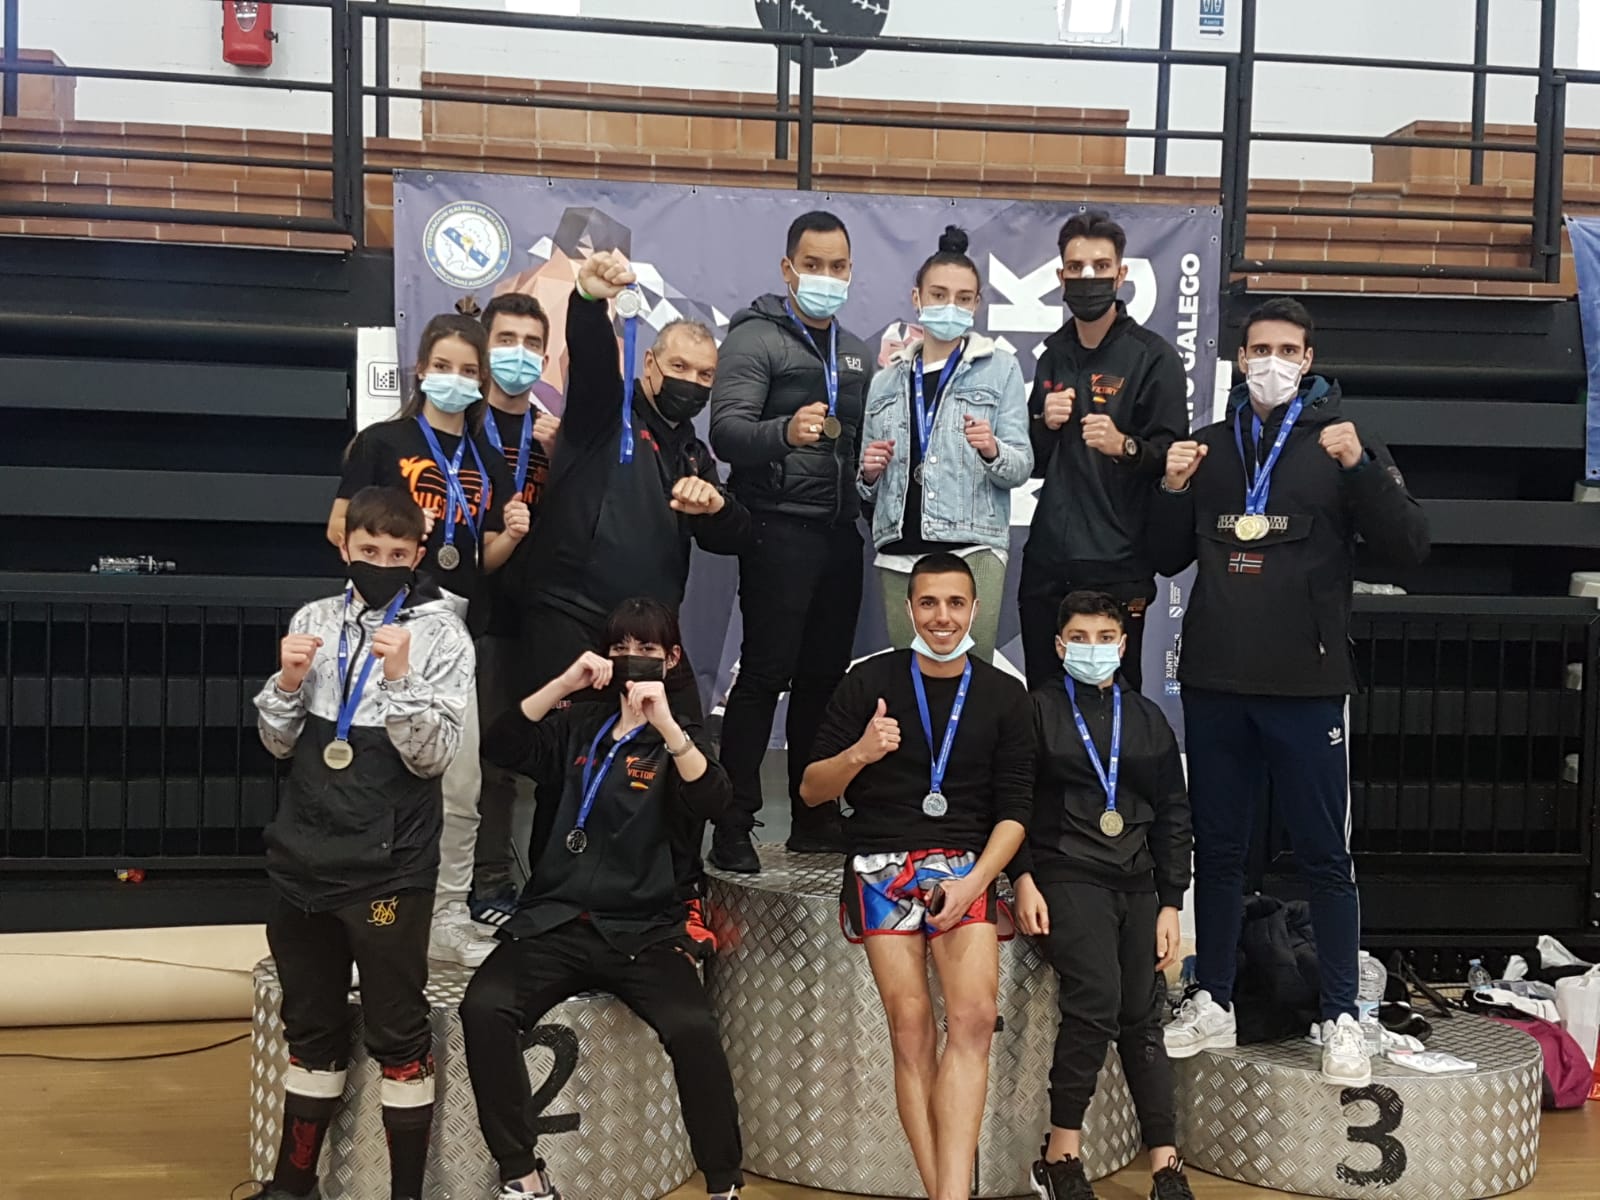 Club Victoria “KickBoxing”: Vuelven las competiciones, vuelven las medallas